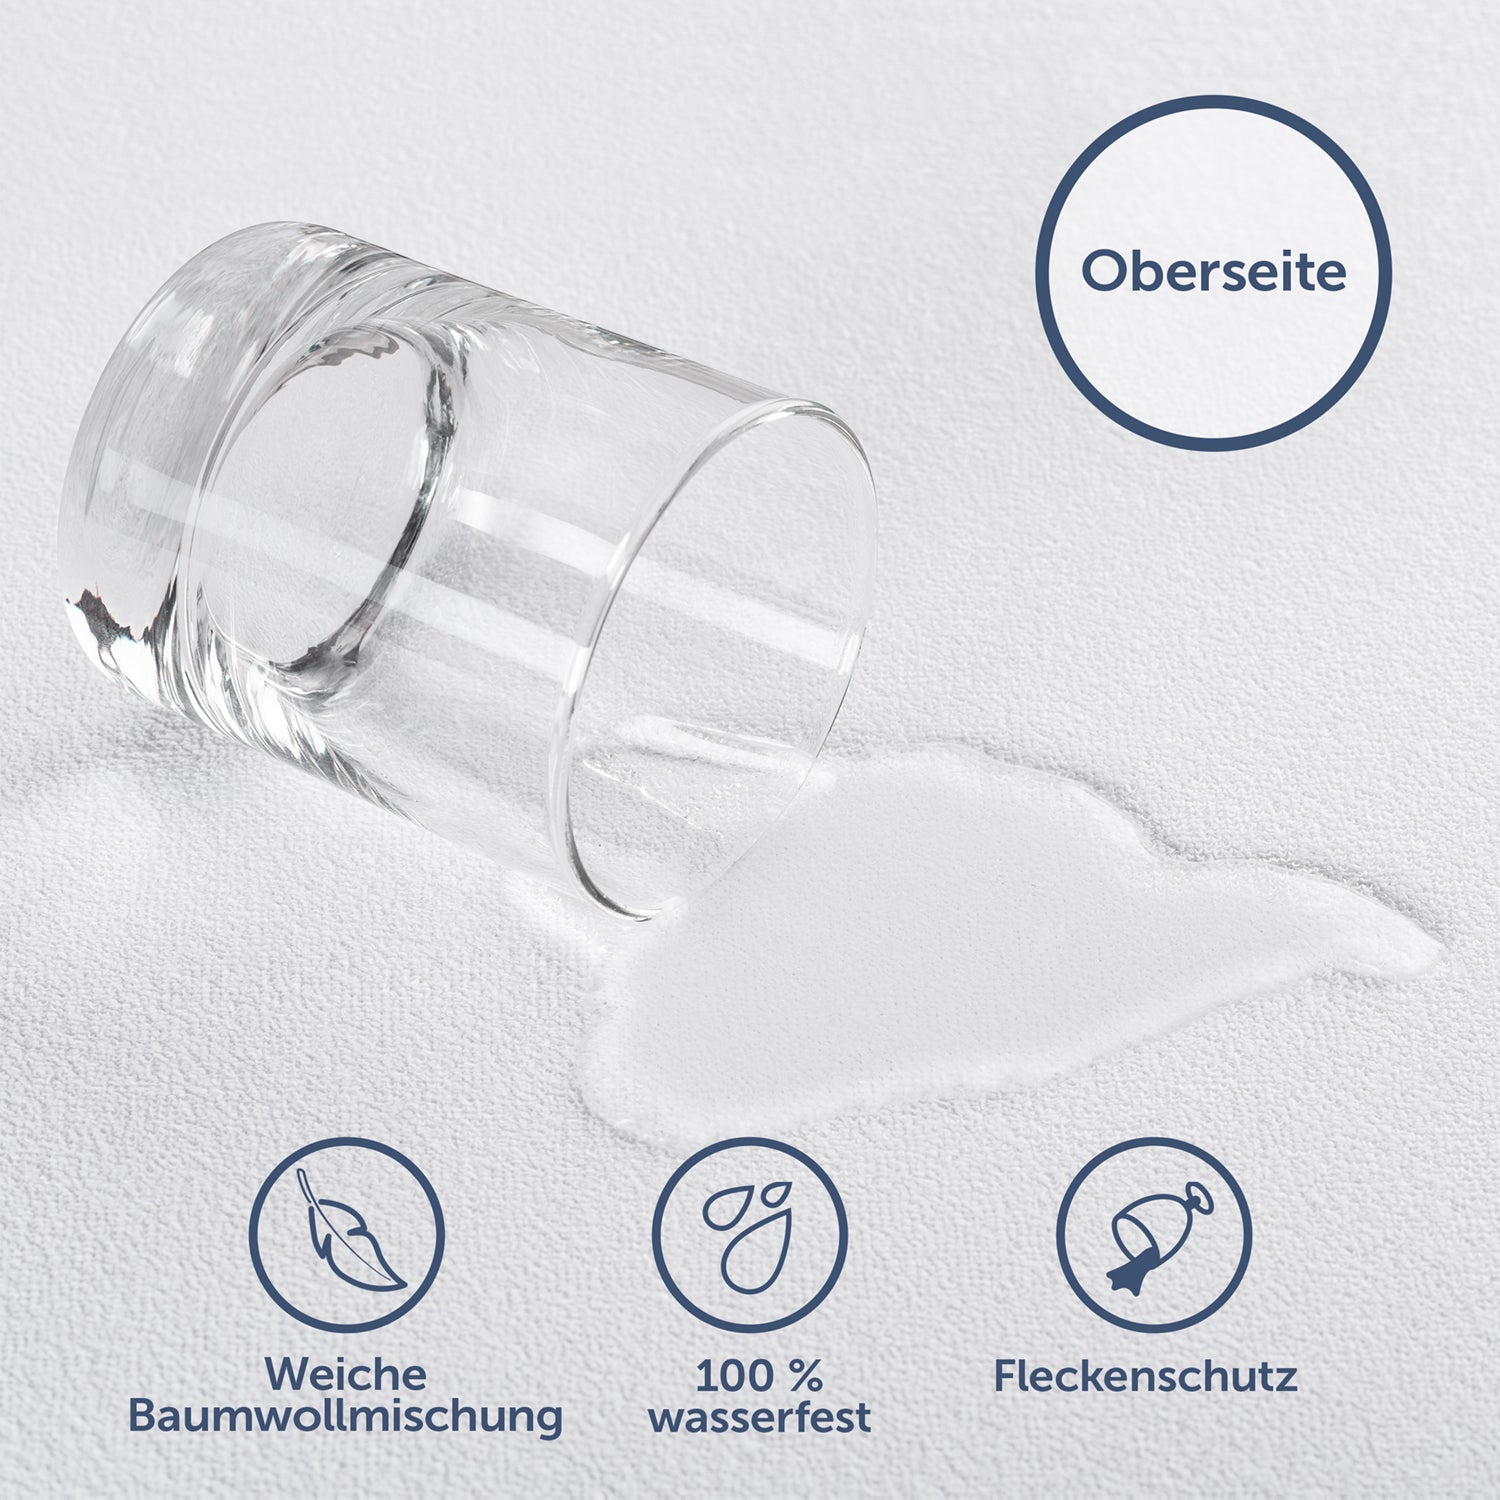 Detailaufnahme des Matratzenschoners mit wassergeschüttetem Glas darauf illustriert Weichheit und wasserfeste Eigenschaften mit Beschriftung 'Oberseite'.